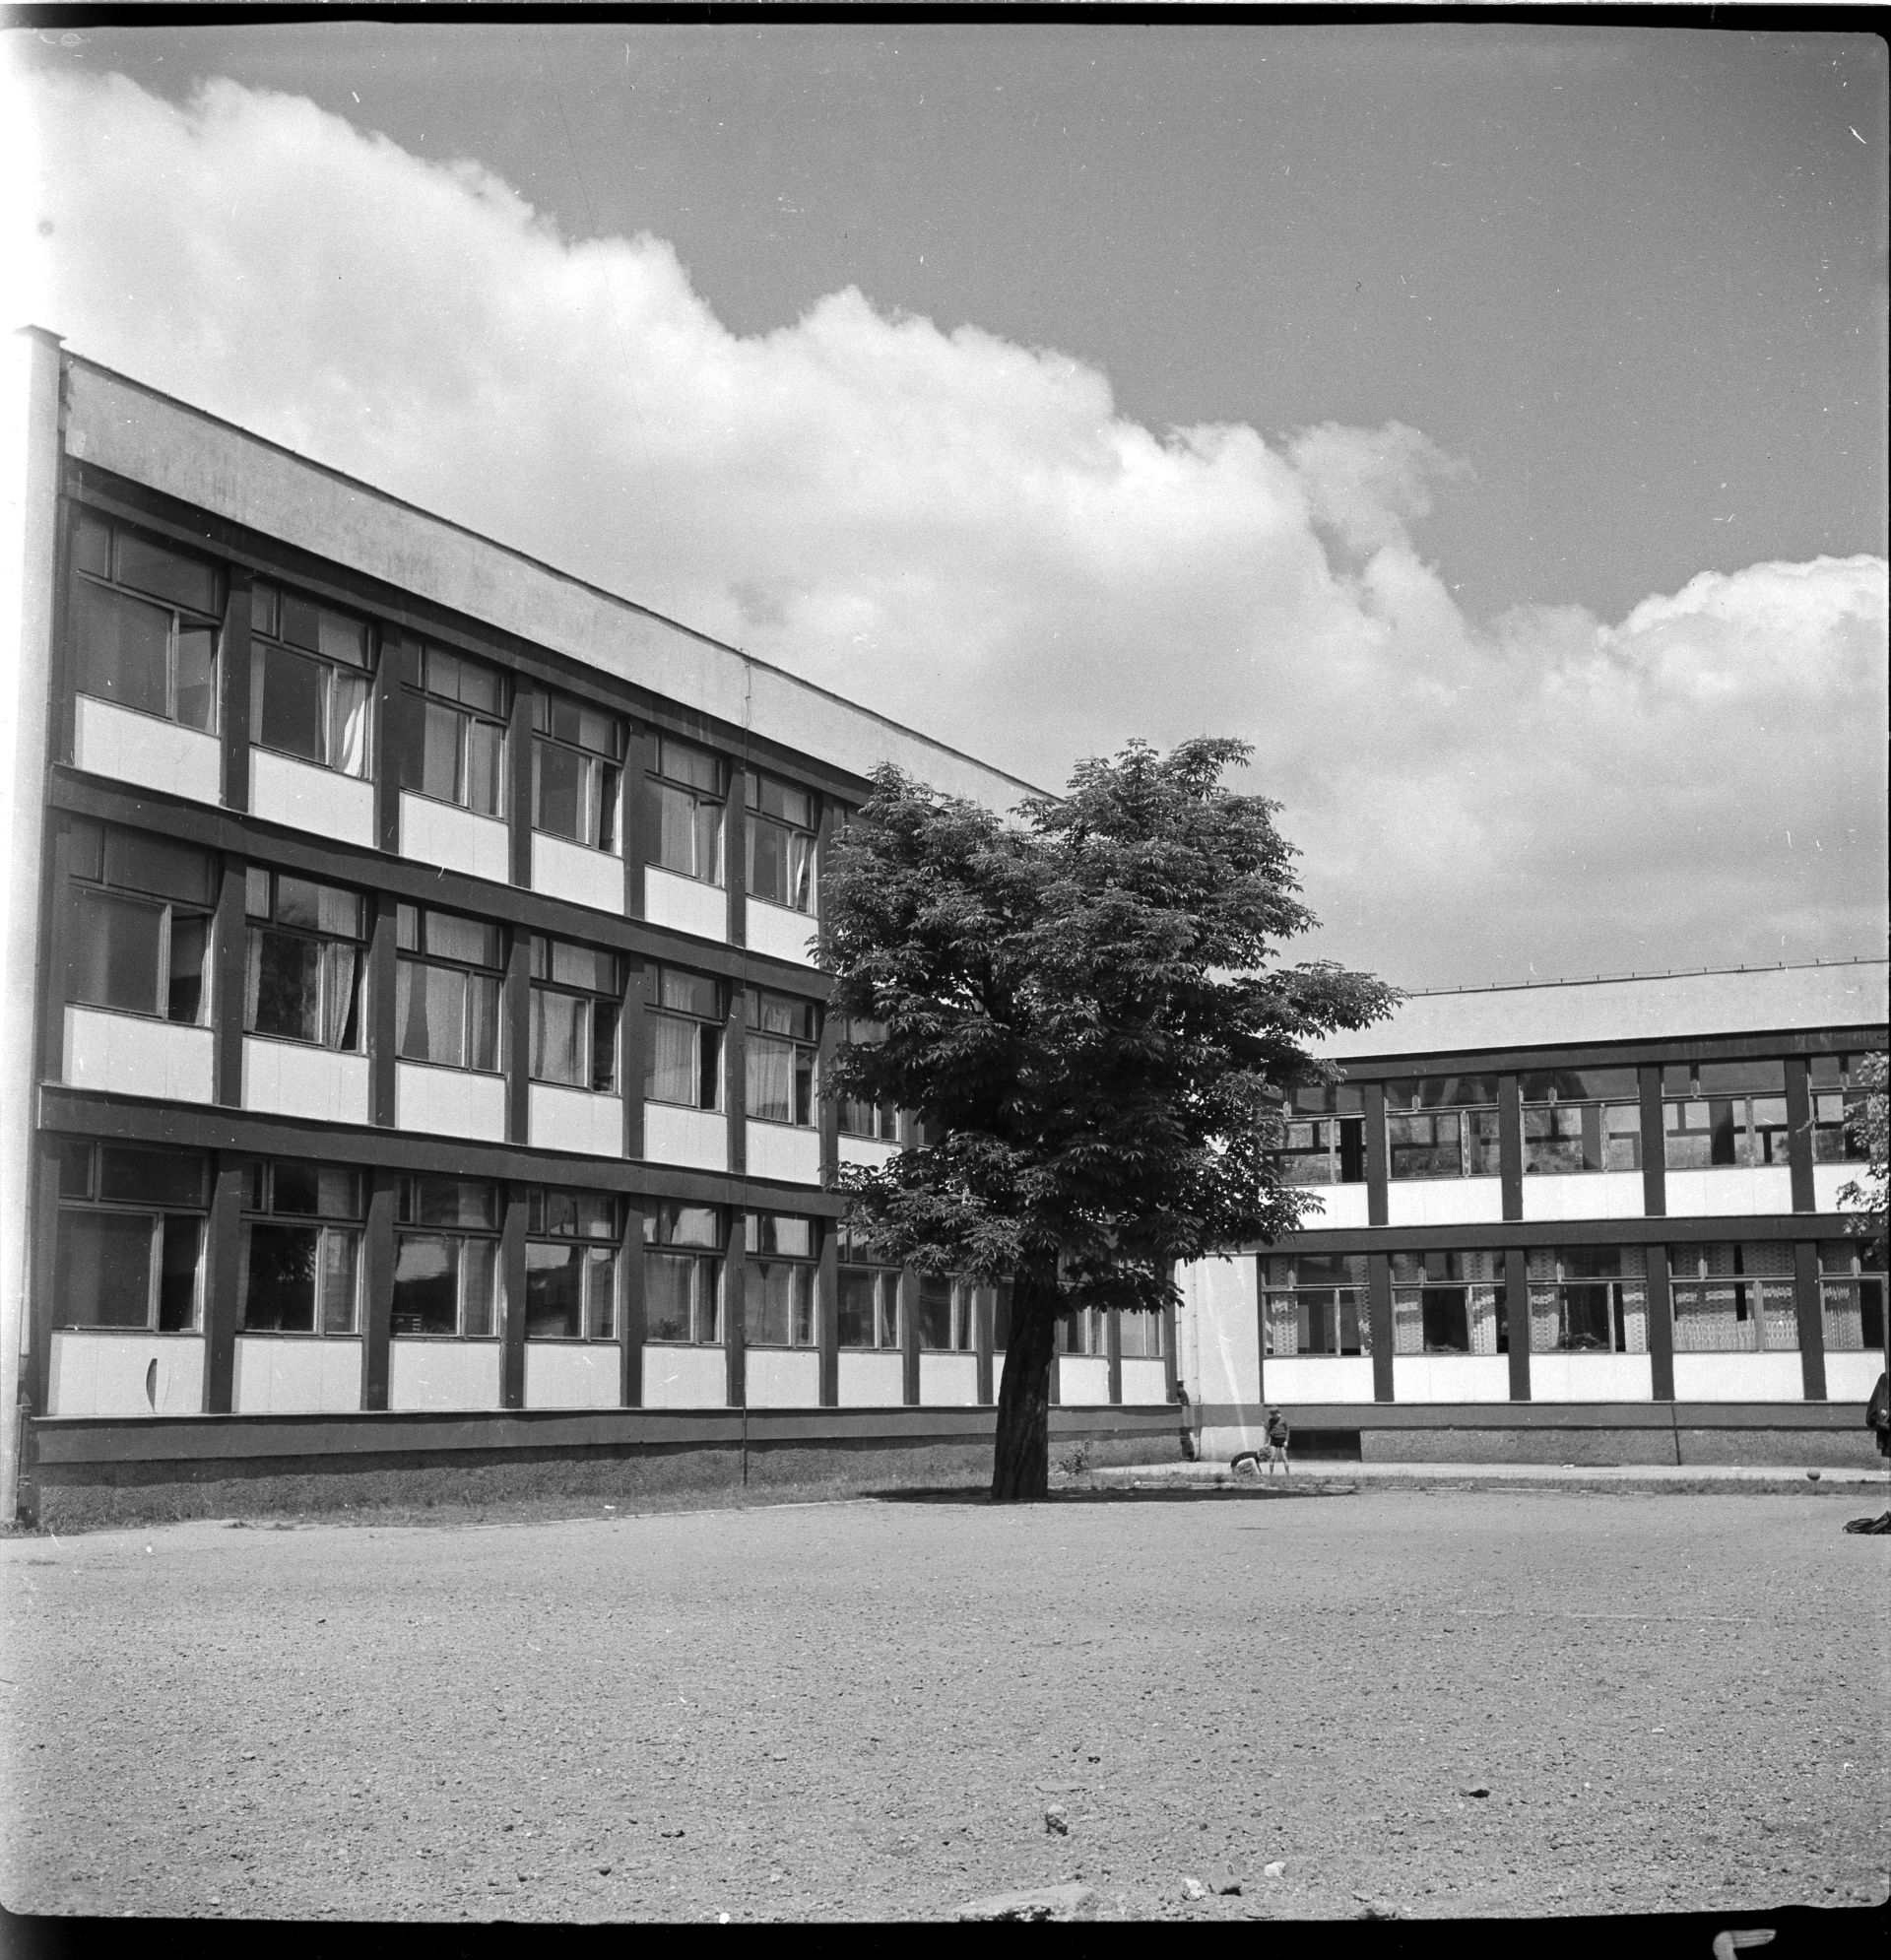 Szkoła Podstawowa nr 71 przy Podwalu, projekt 1955-56, realizacja 1958-60, fot. Tomasz Olszewski, Muzeum Architektury (źródło: materiały prasowe organizatora)